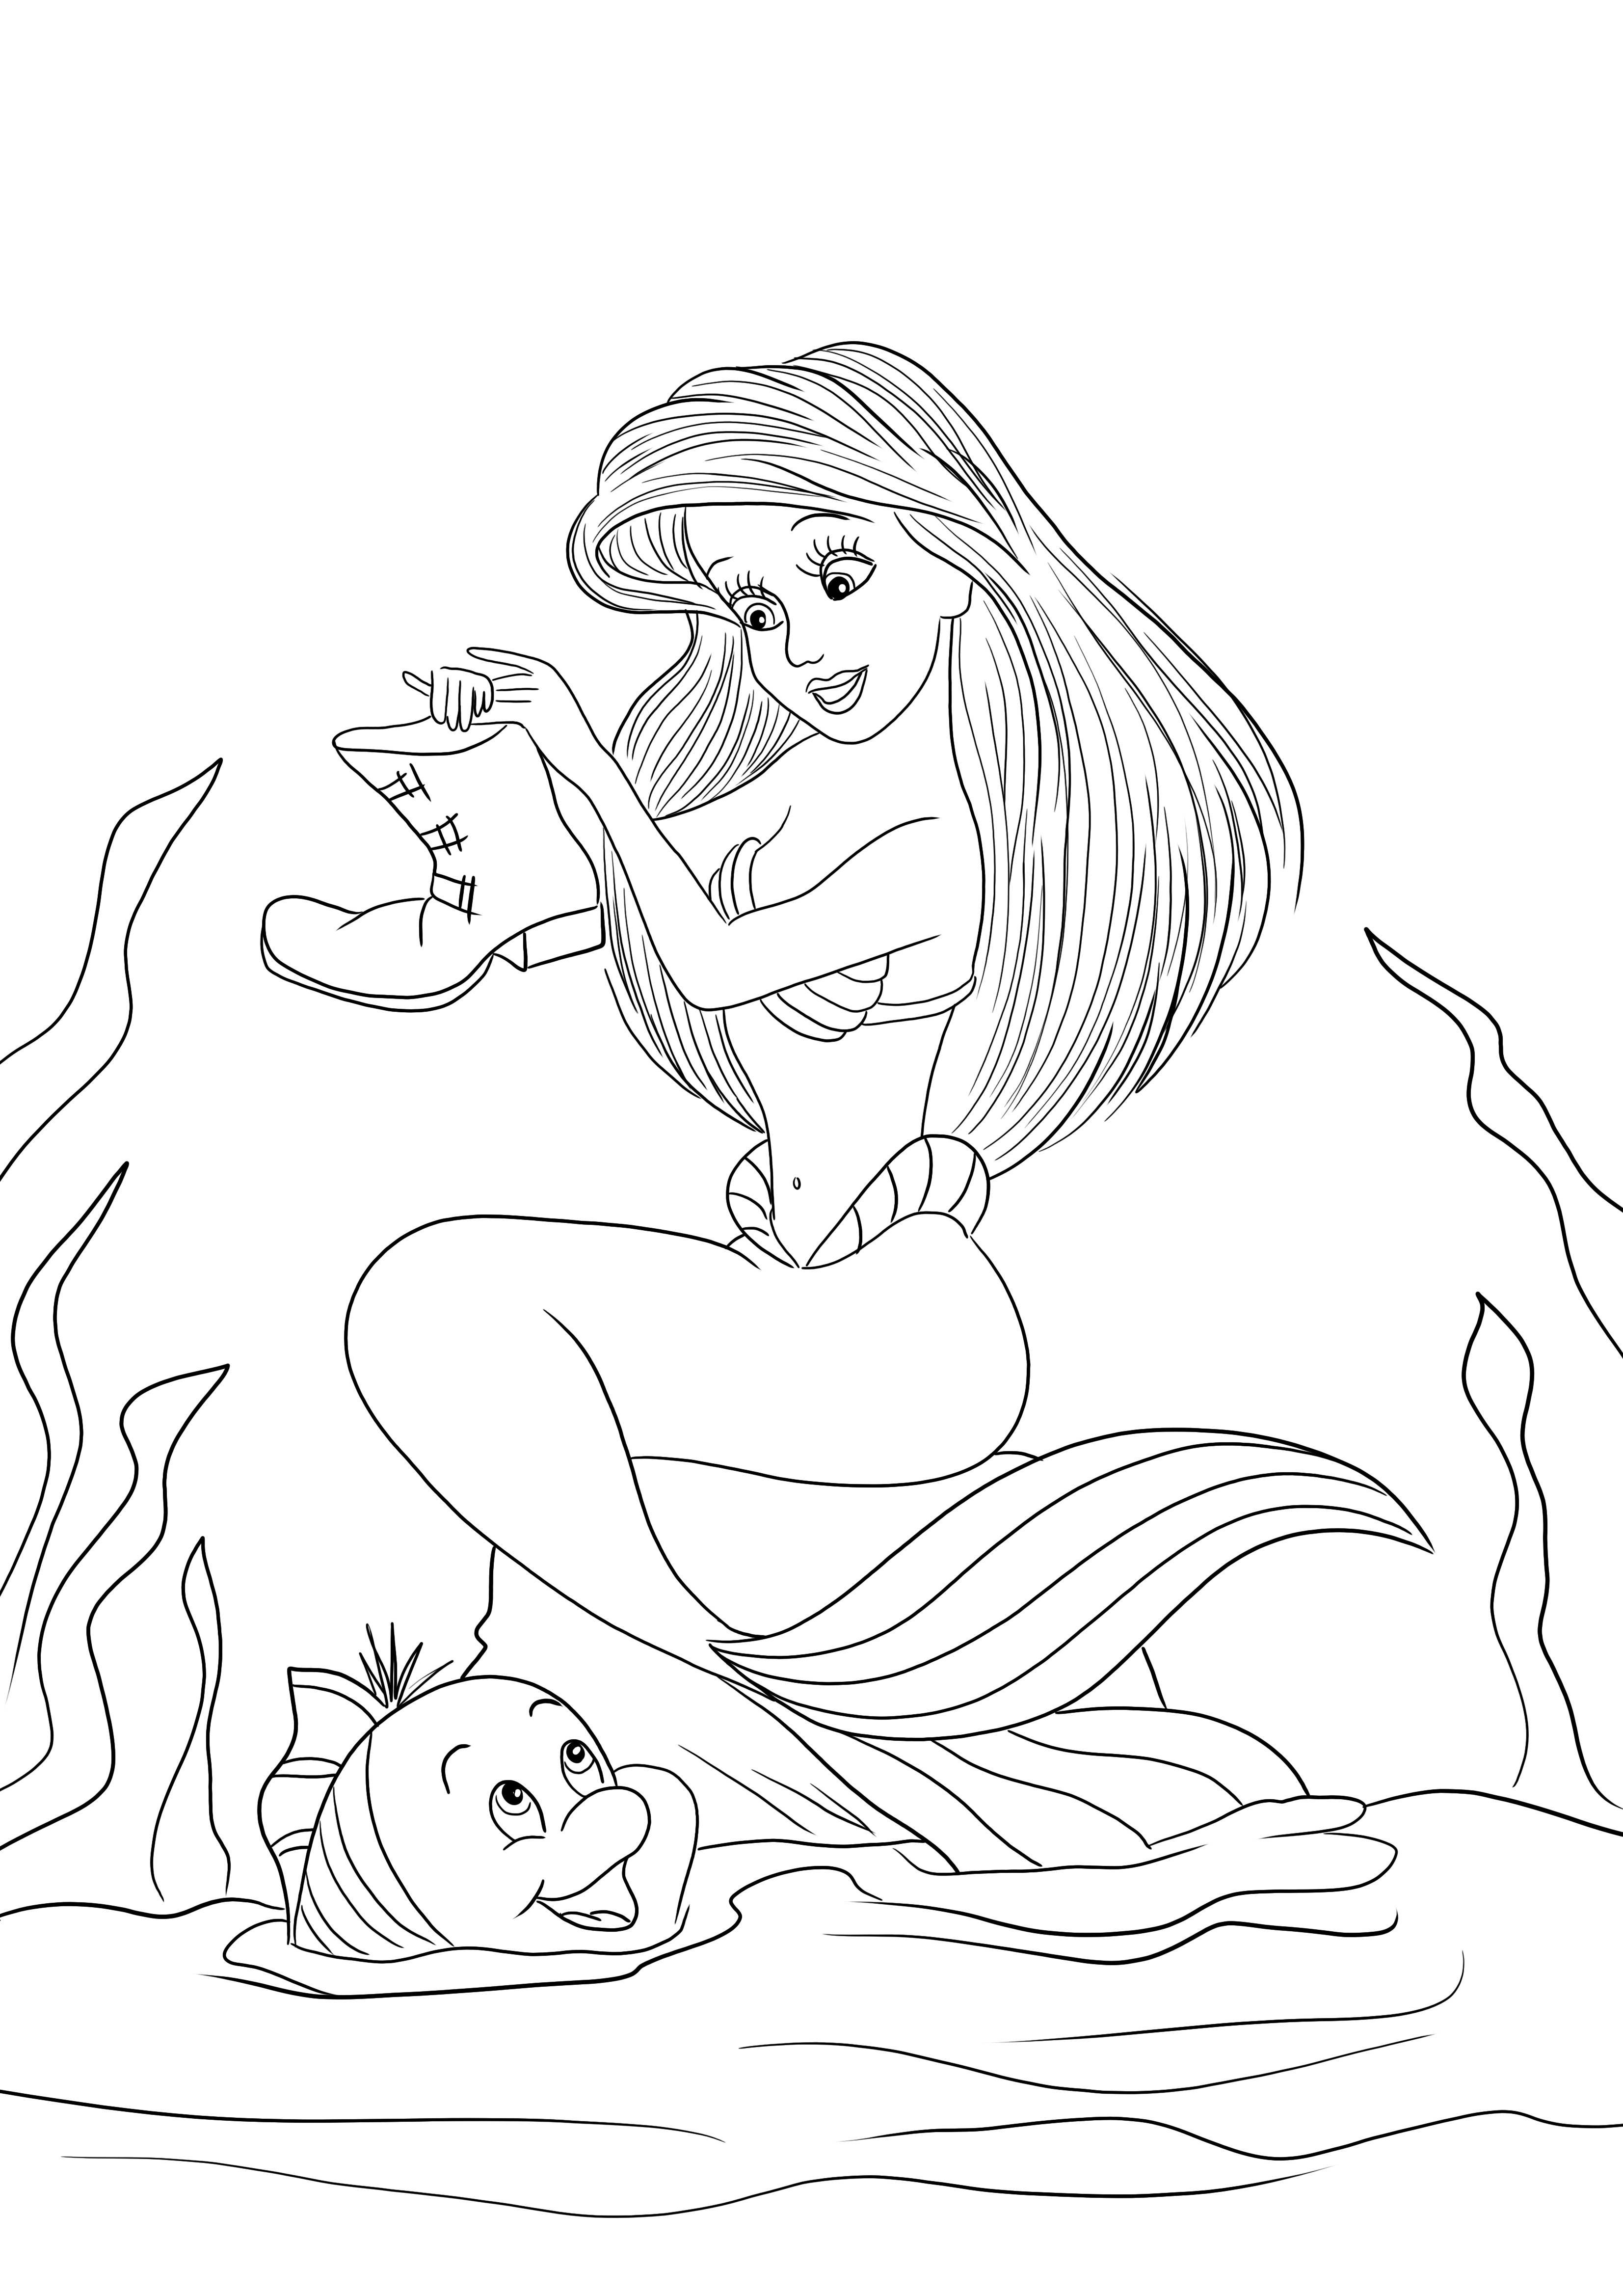 Ariel et Flounder colorient et téléchargent des images pour tous les âges